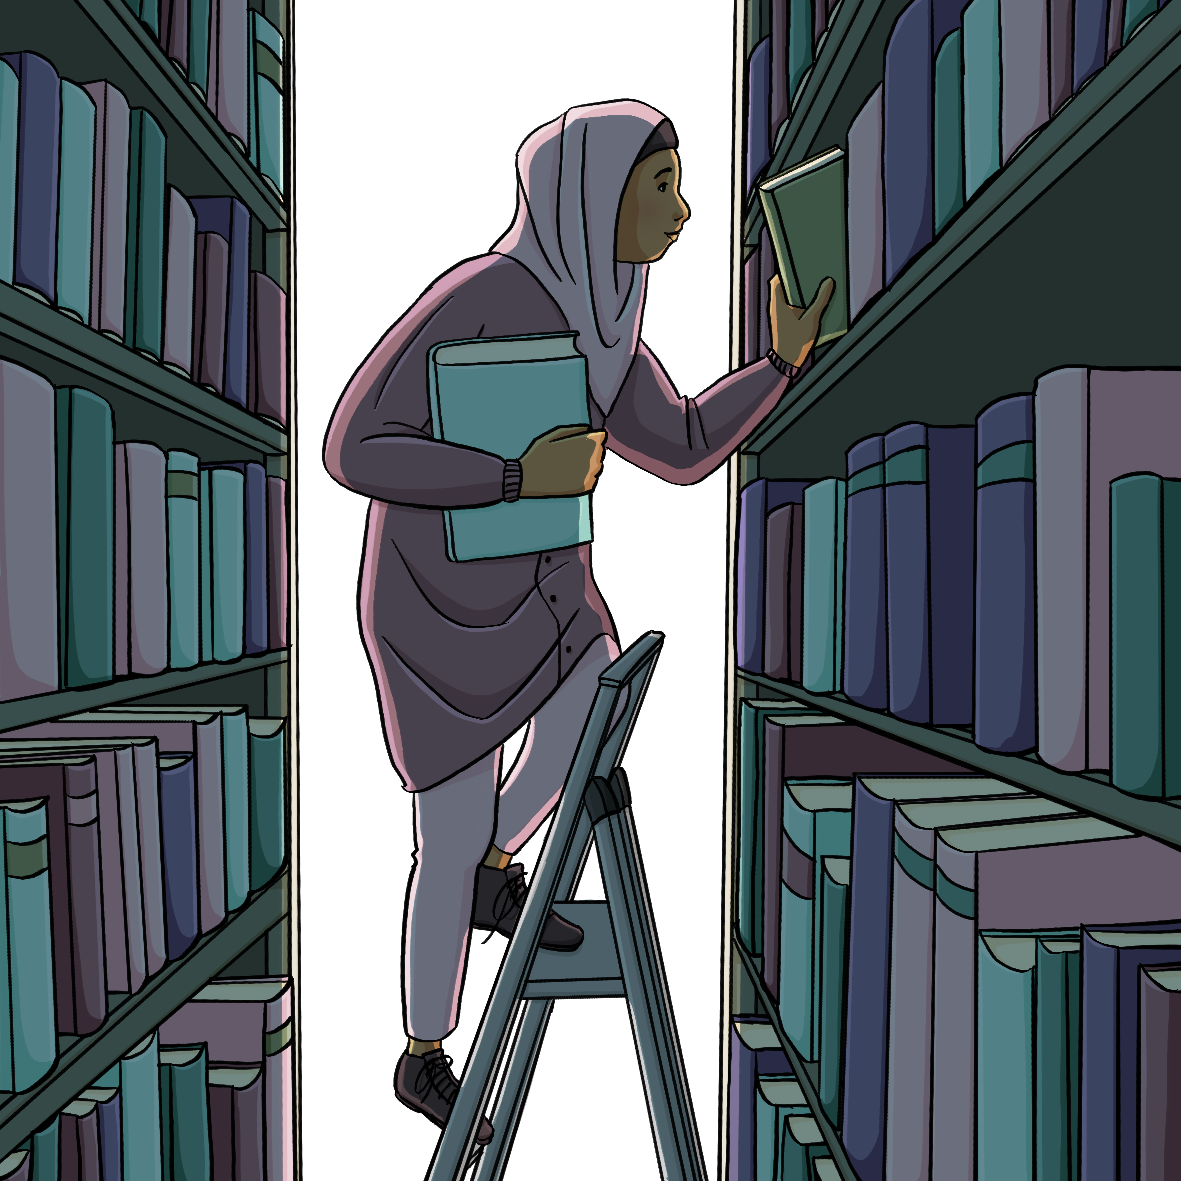 Eine Frau steht auf einer Leiter und räumt Bücher in ein Regal. Es ist sehr Dunkel zwischen den Regalen.